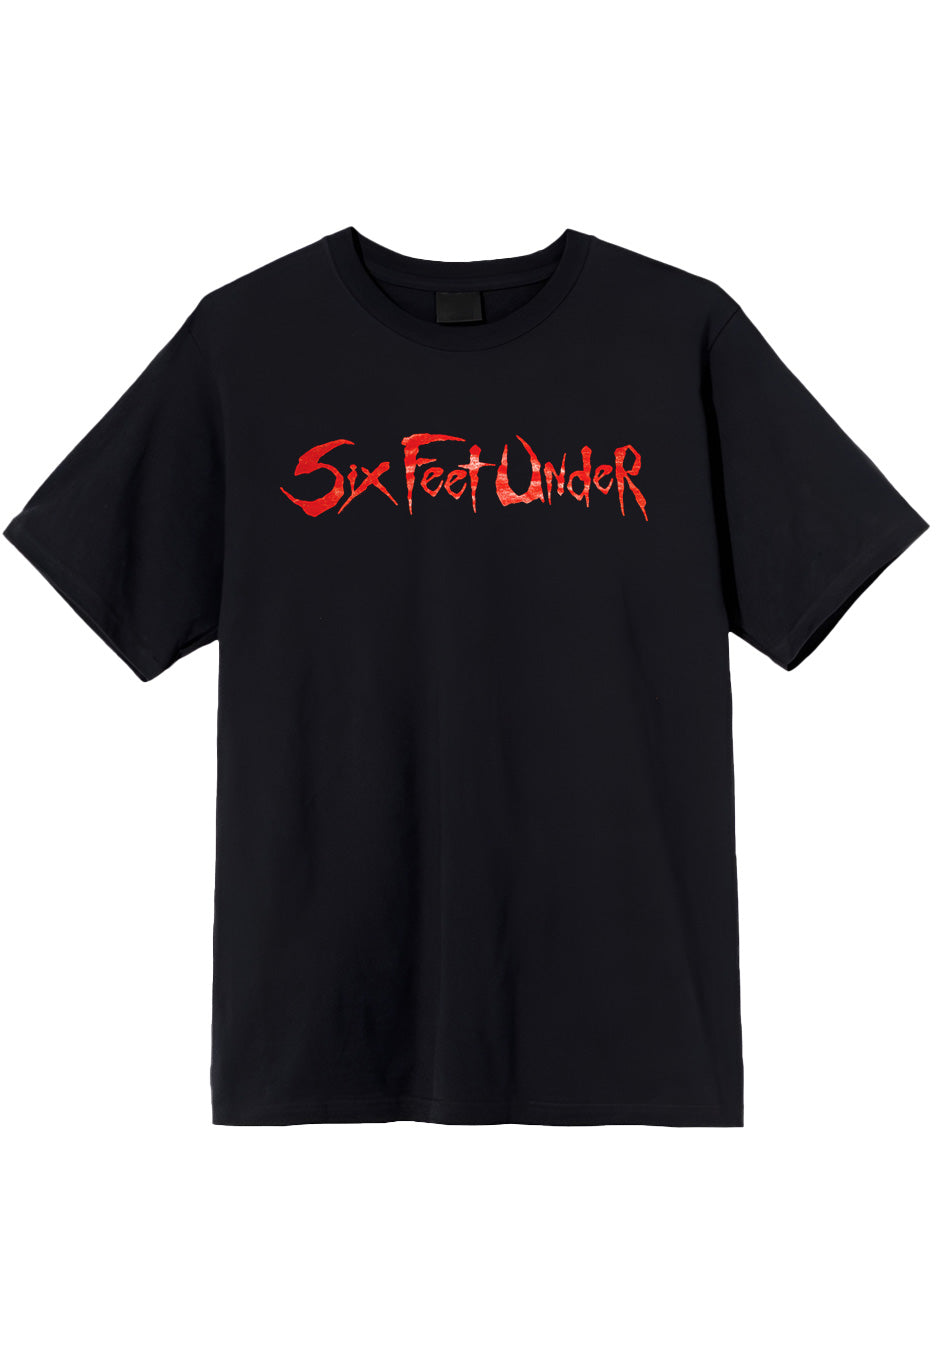 Six Feet Under - Logo - T-Shirt